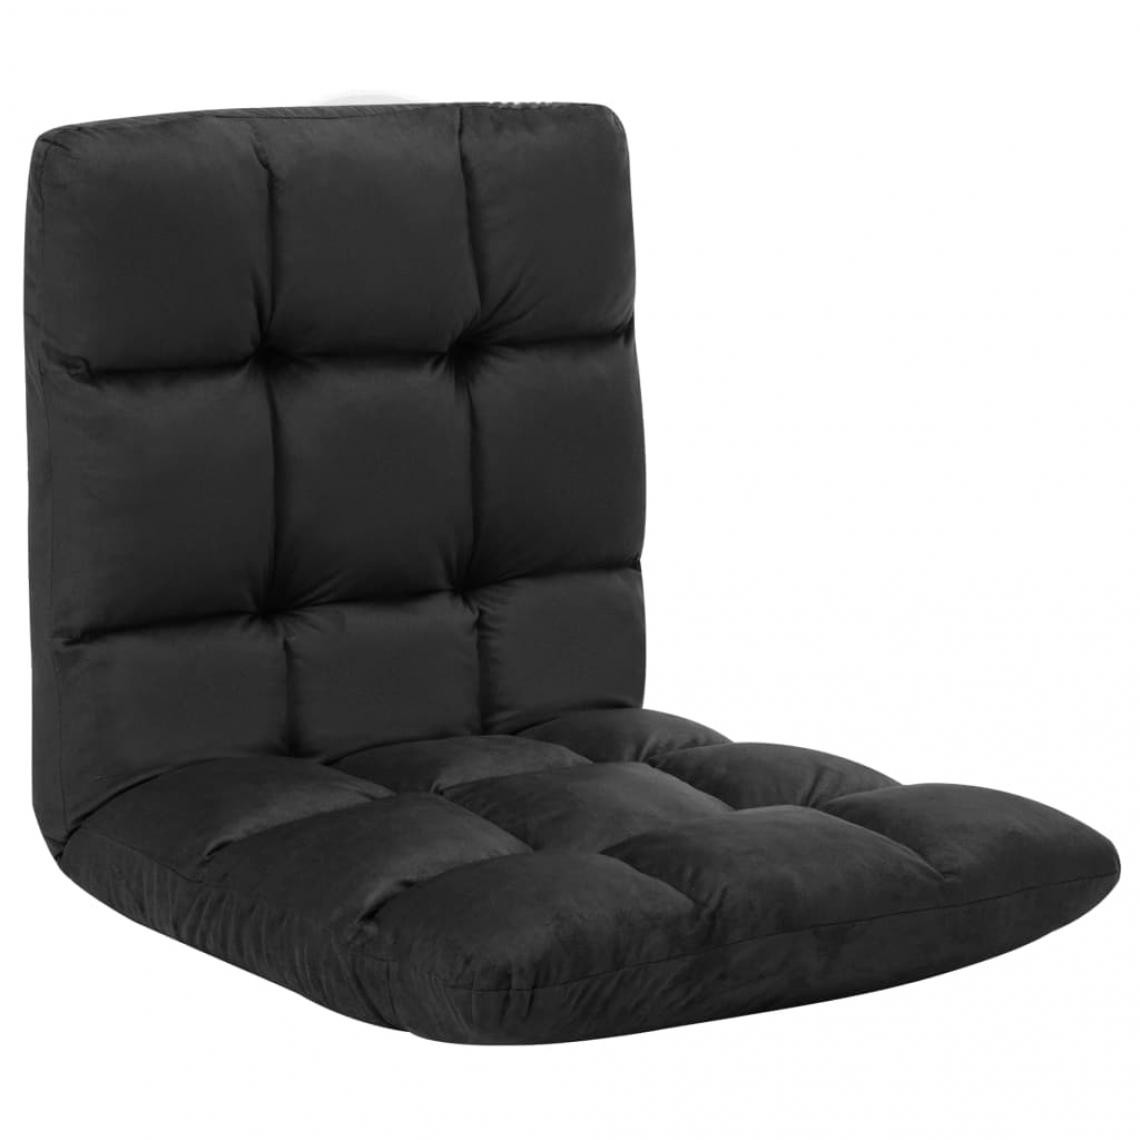 Vidaxl - vidaXL Chaise pliable de sol Noir Microfibre - Transats, chaises longues